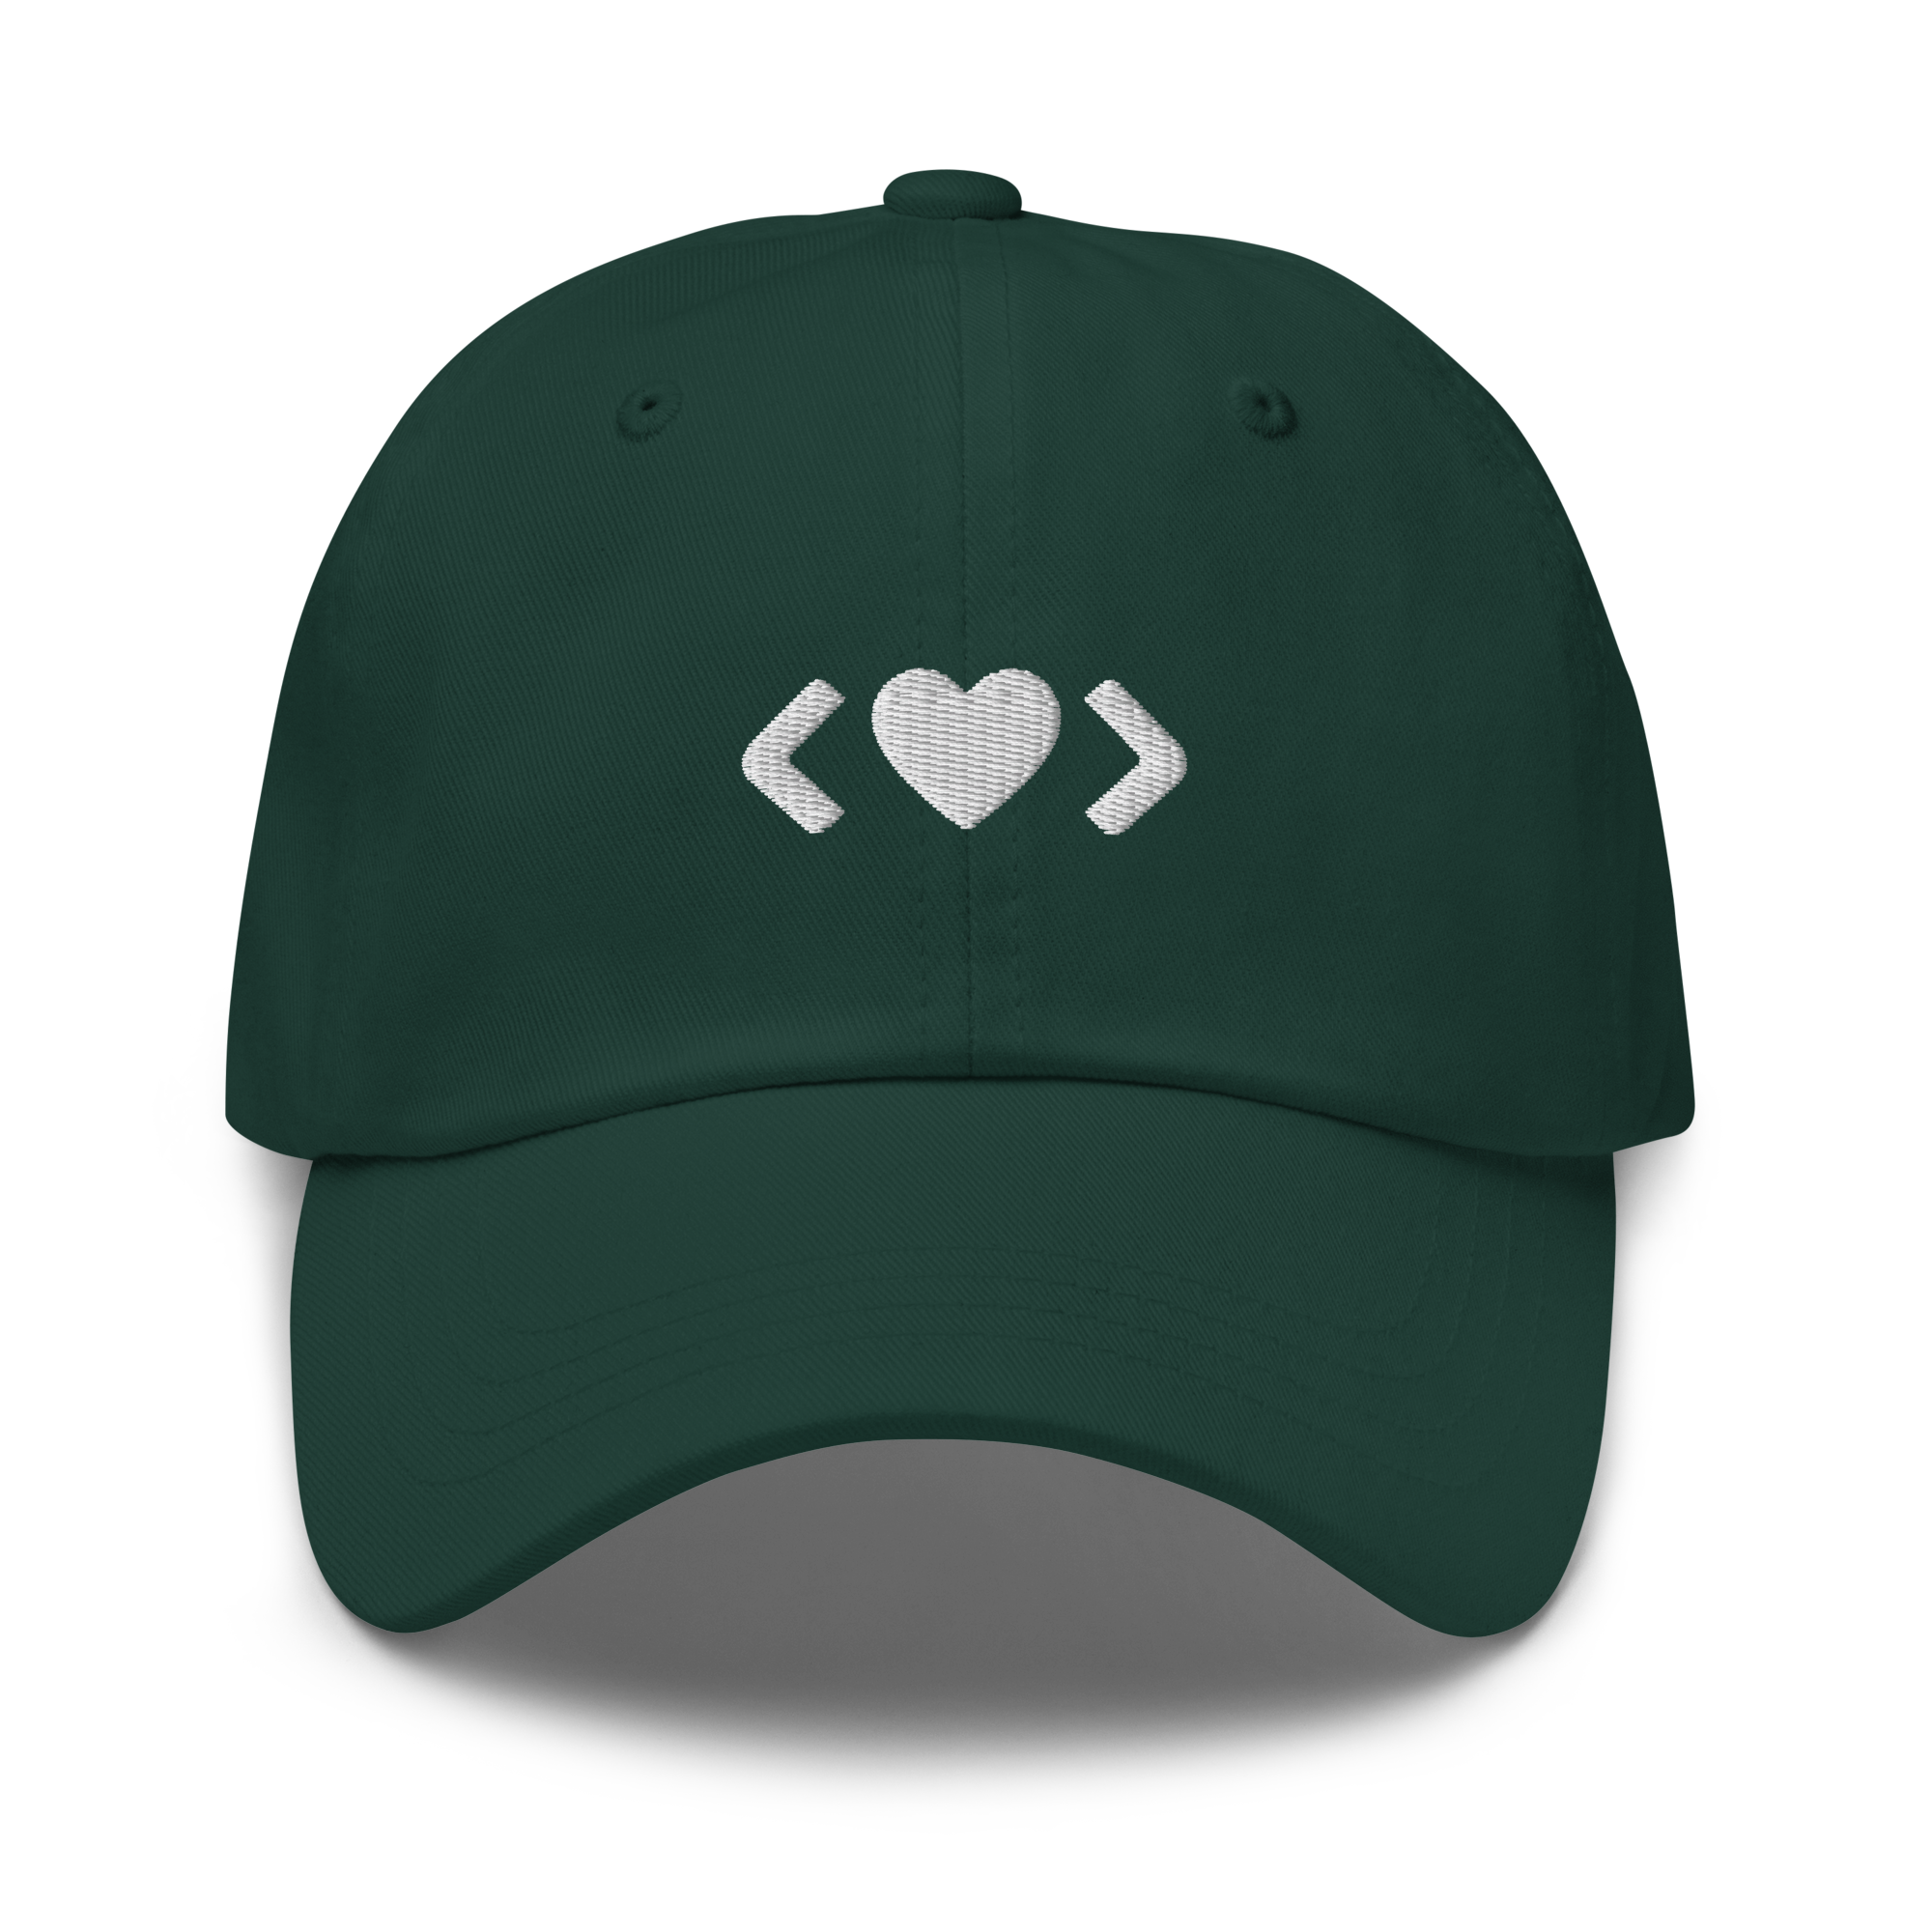 Code Heart Hat